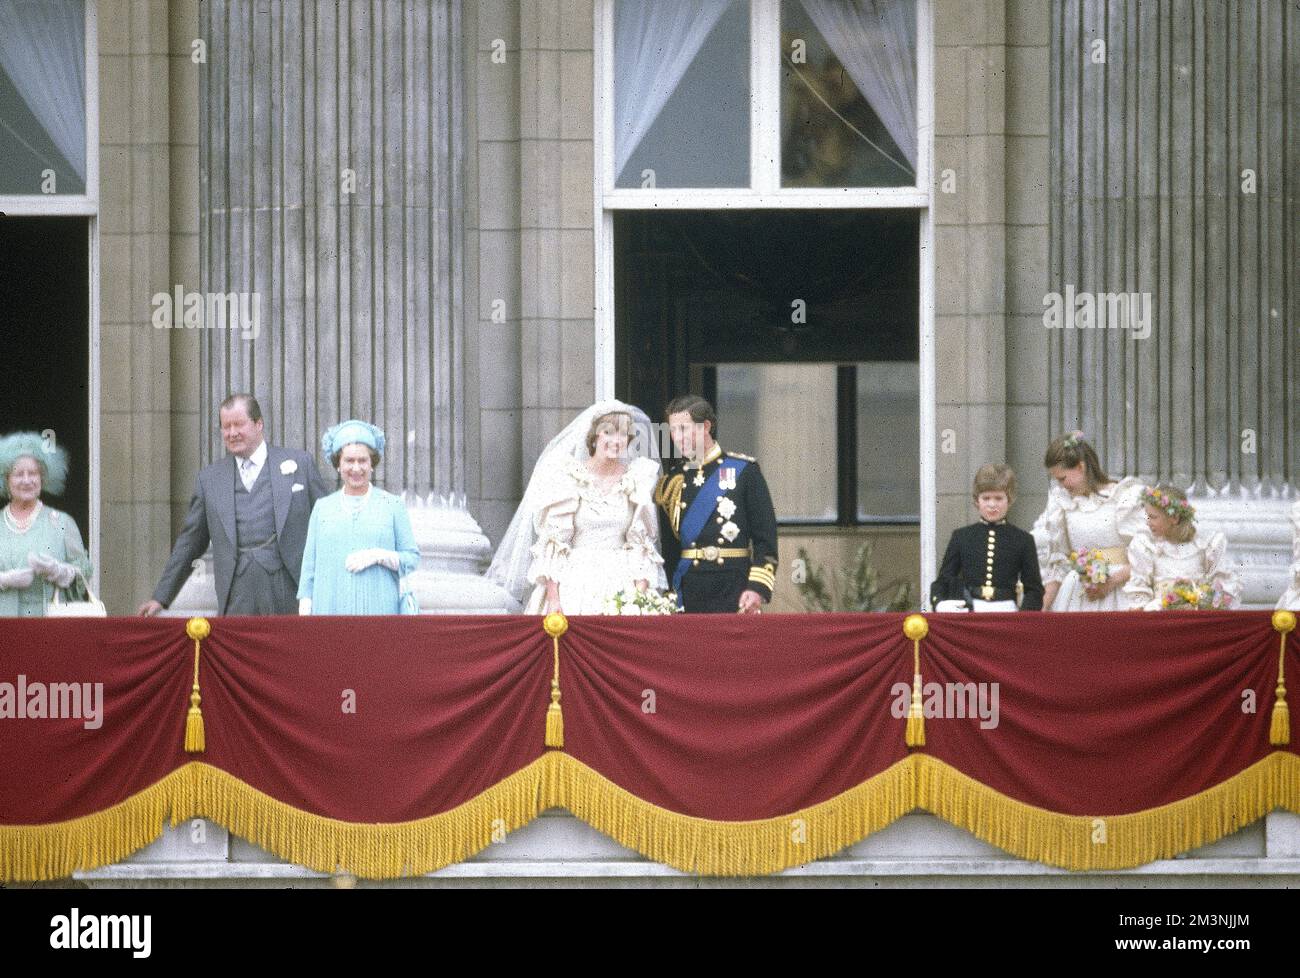 Königin Elizabeth II., Königin Mutter und Prinz Philip, kommen in der St. Paul's Cathedral an, um Prinz Charles und Lady Diana Spencer am 29. Juli 1981 zu heiraten. Datum: 1981 Stockfoto